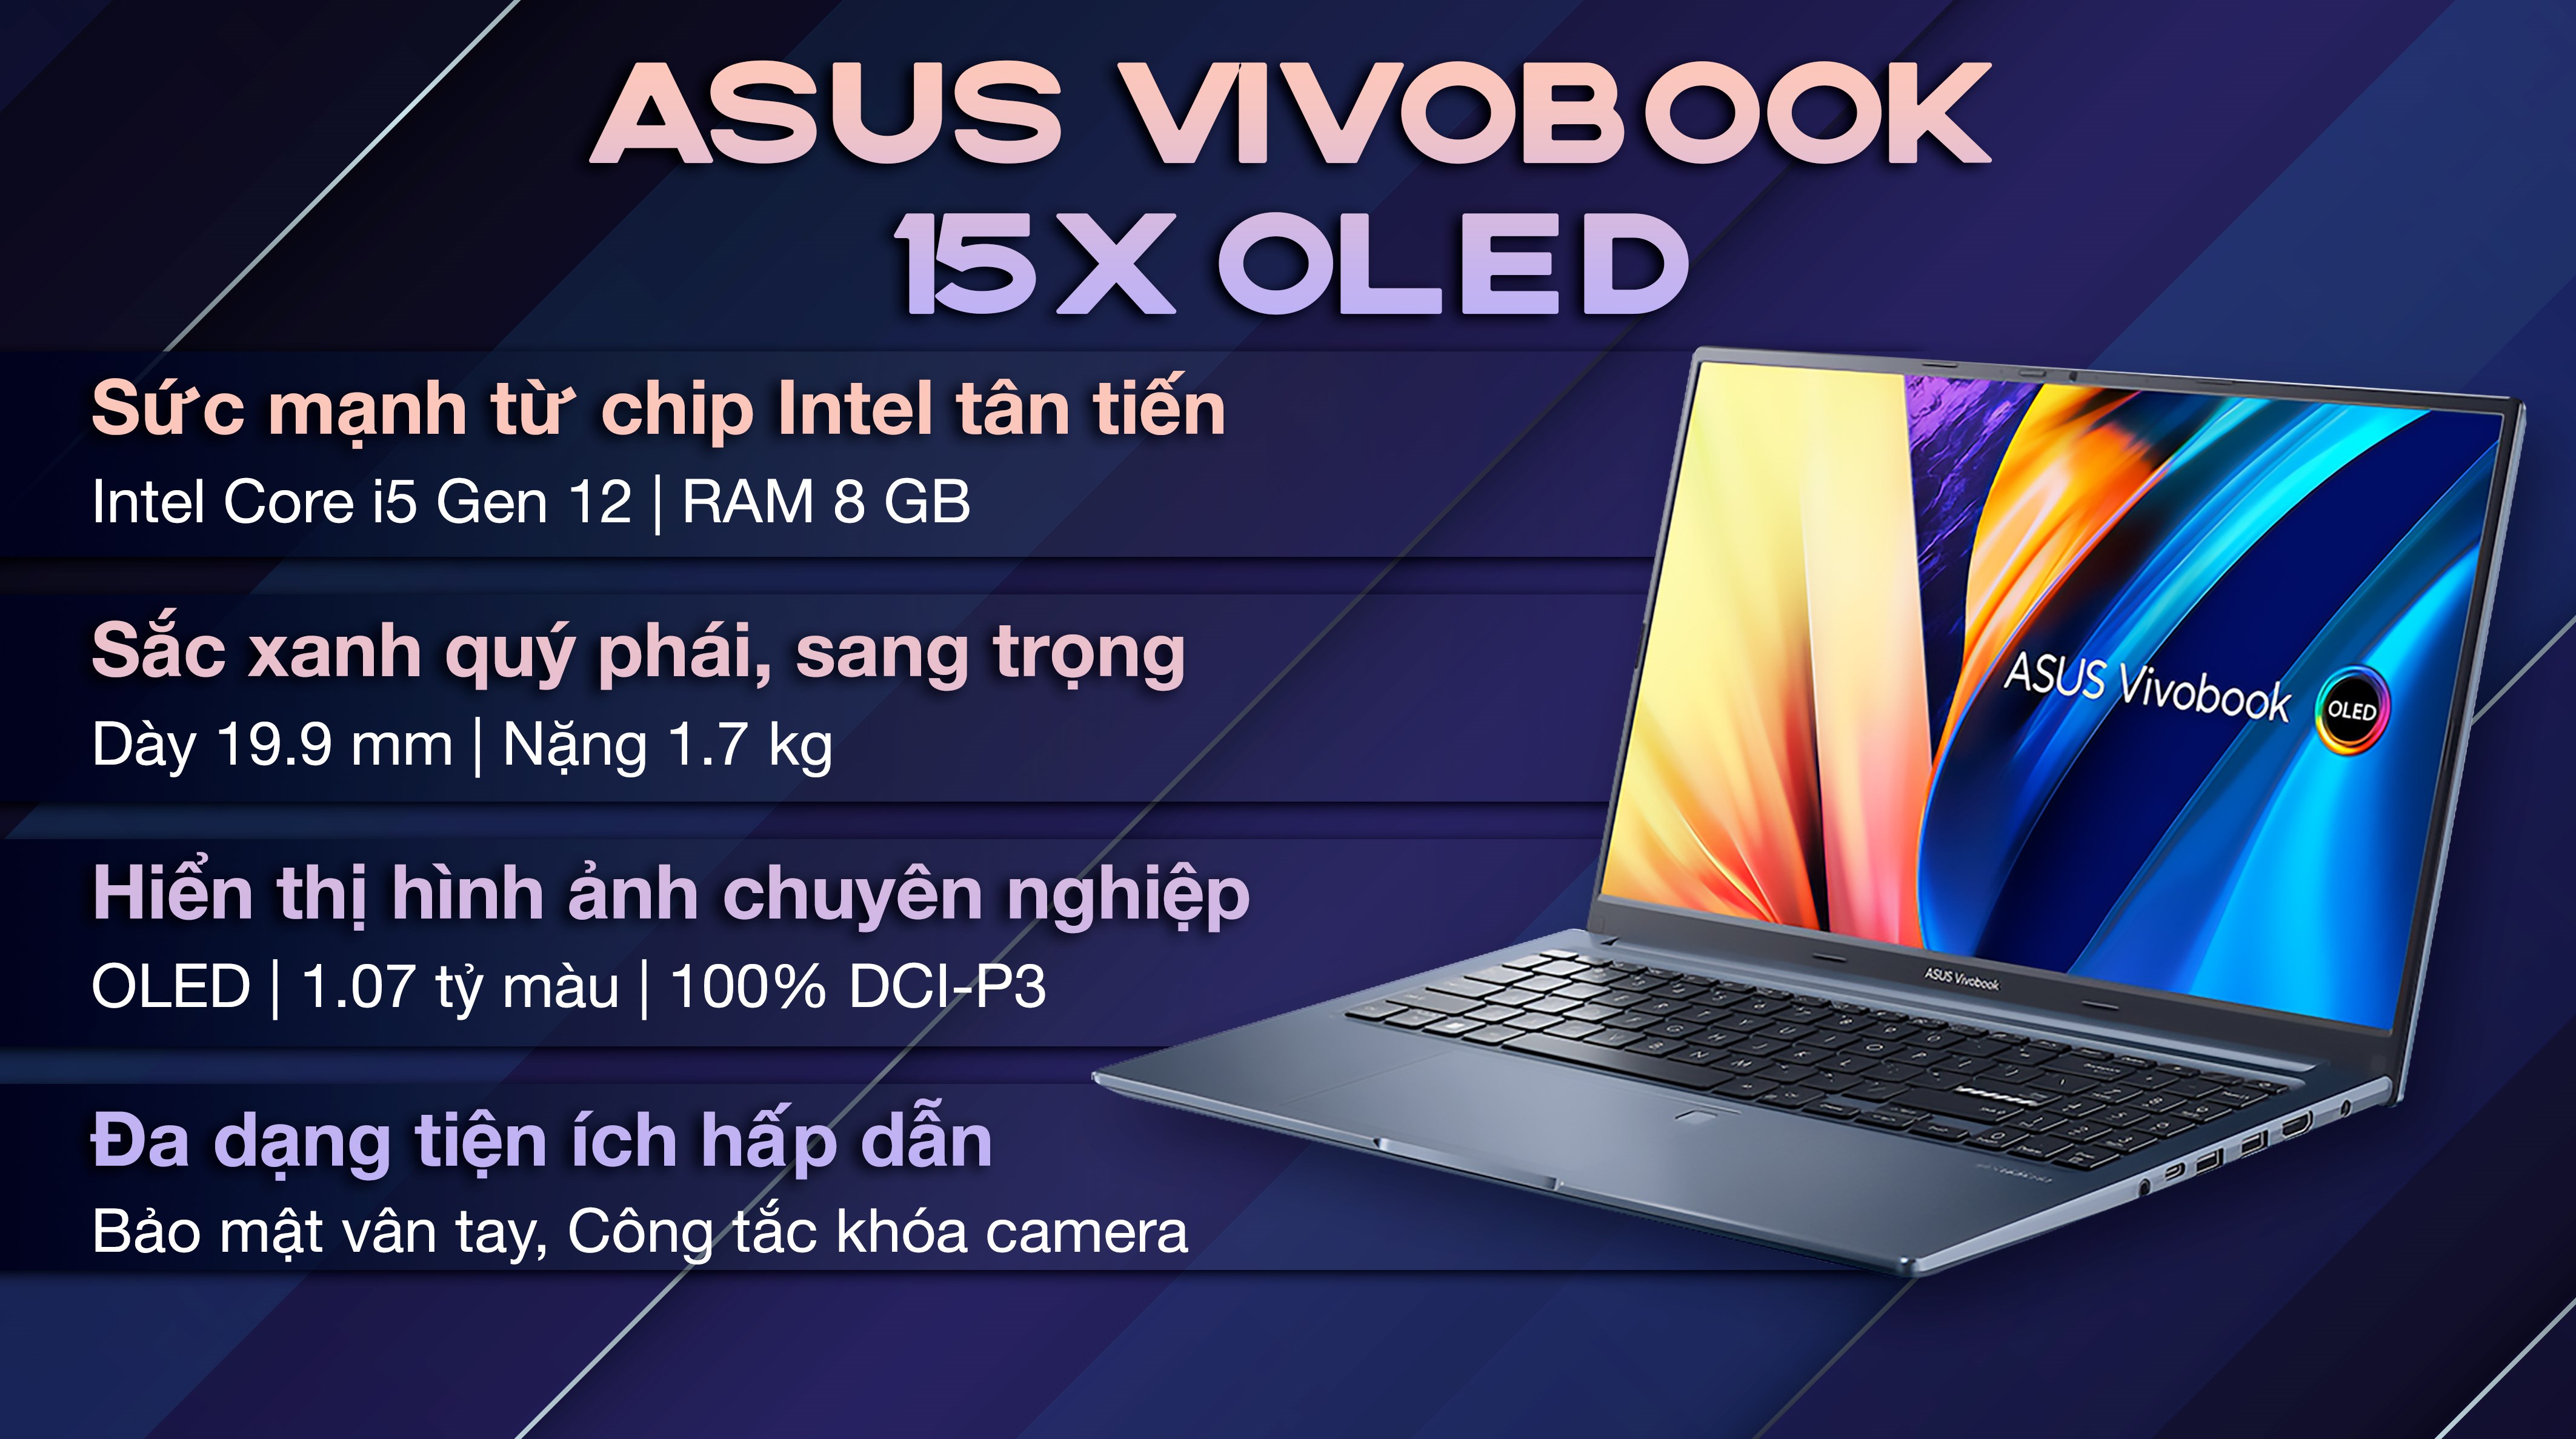 Asus VivoBook là sự lựa chọn tuyệt vời cho những ai đang tìm kiếm một chiếc laptop đáng tin cậy và chất lượng. Được trang bị những tính năng vượt trội, chiếc laptop này sẽ giúp bạn hoàn thành công việc một cách dễ dàng và hiệu quả hơn bao giờ hết.